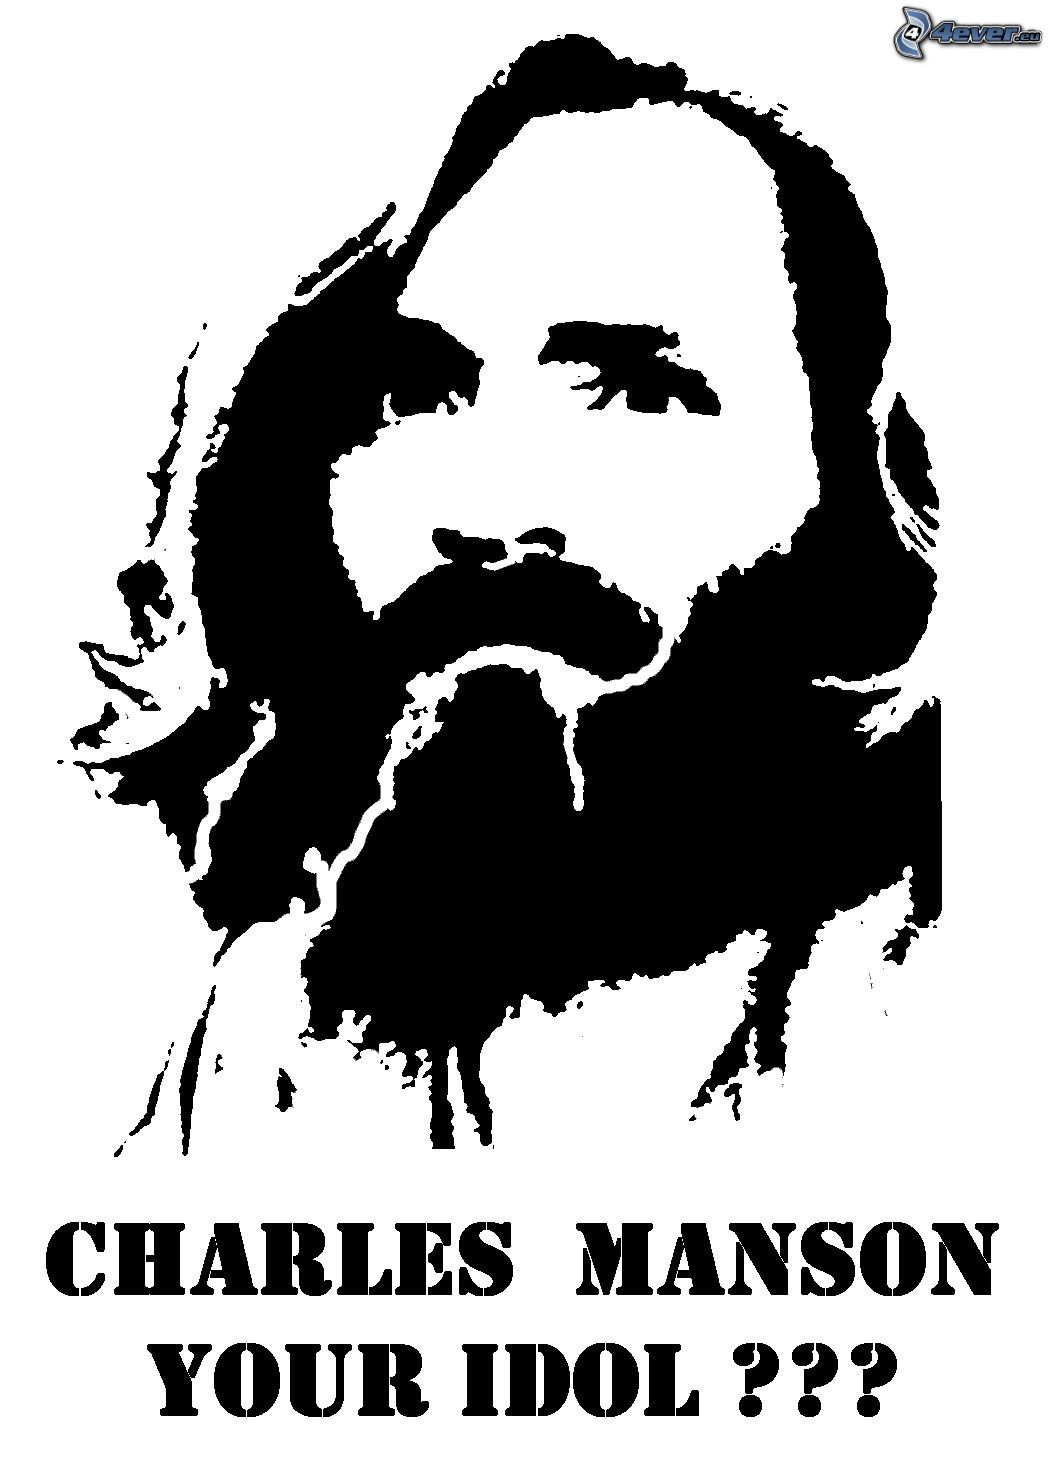 40+] Charles Manson Wallpaper - WallpaperSafari